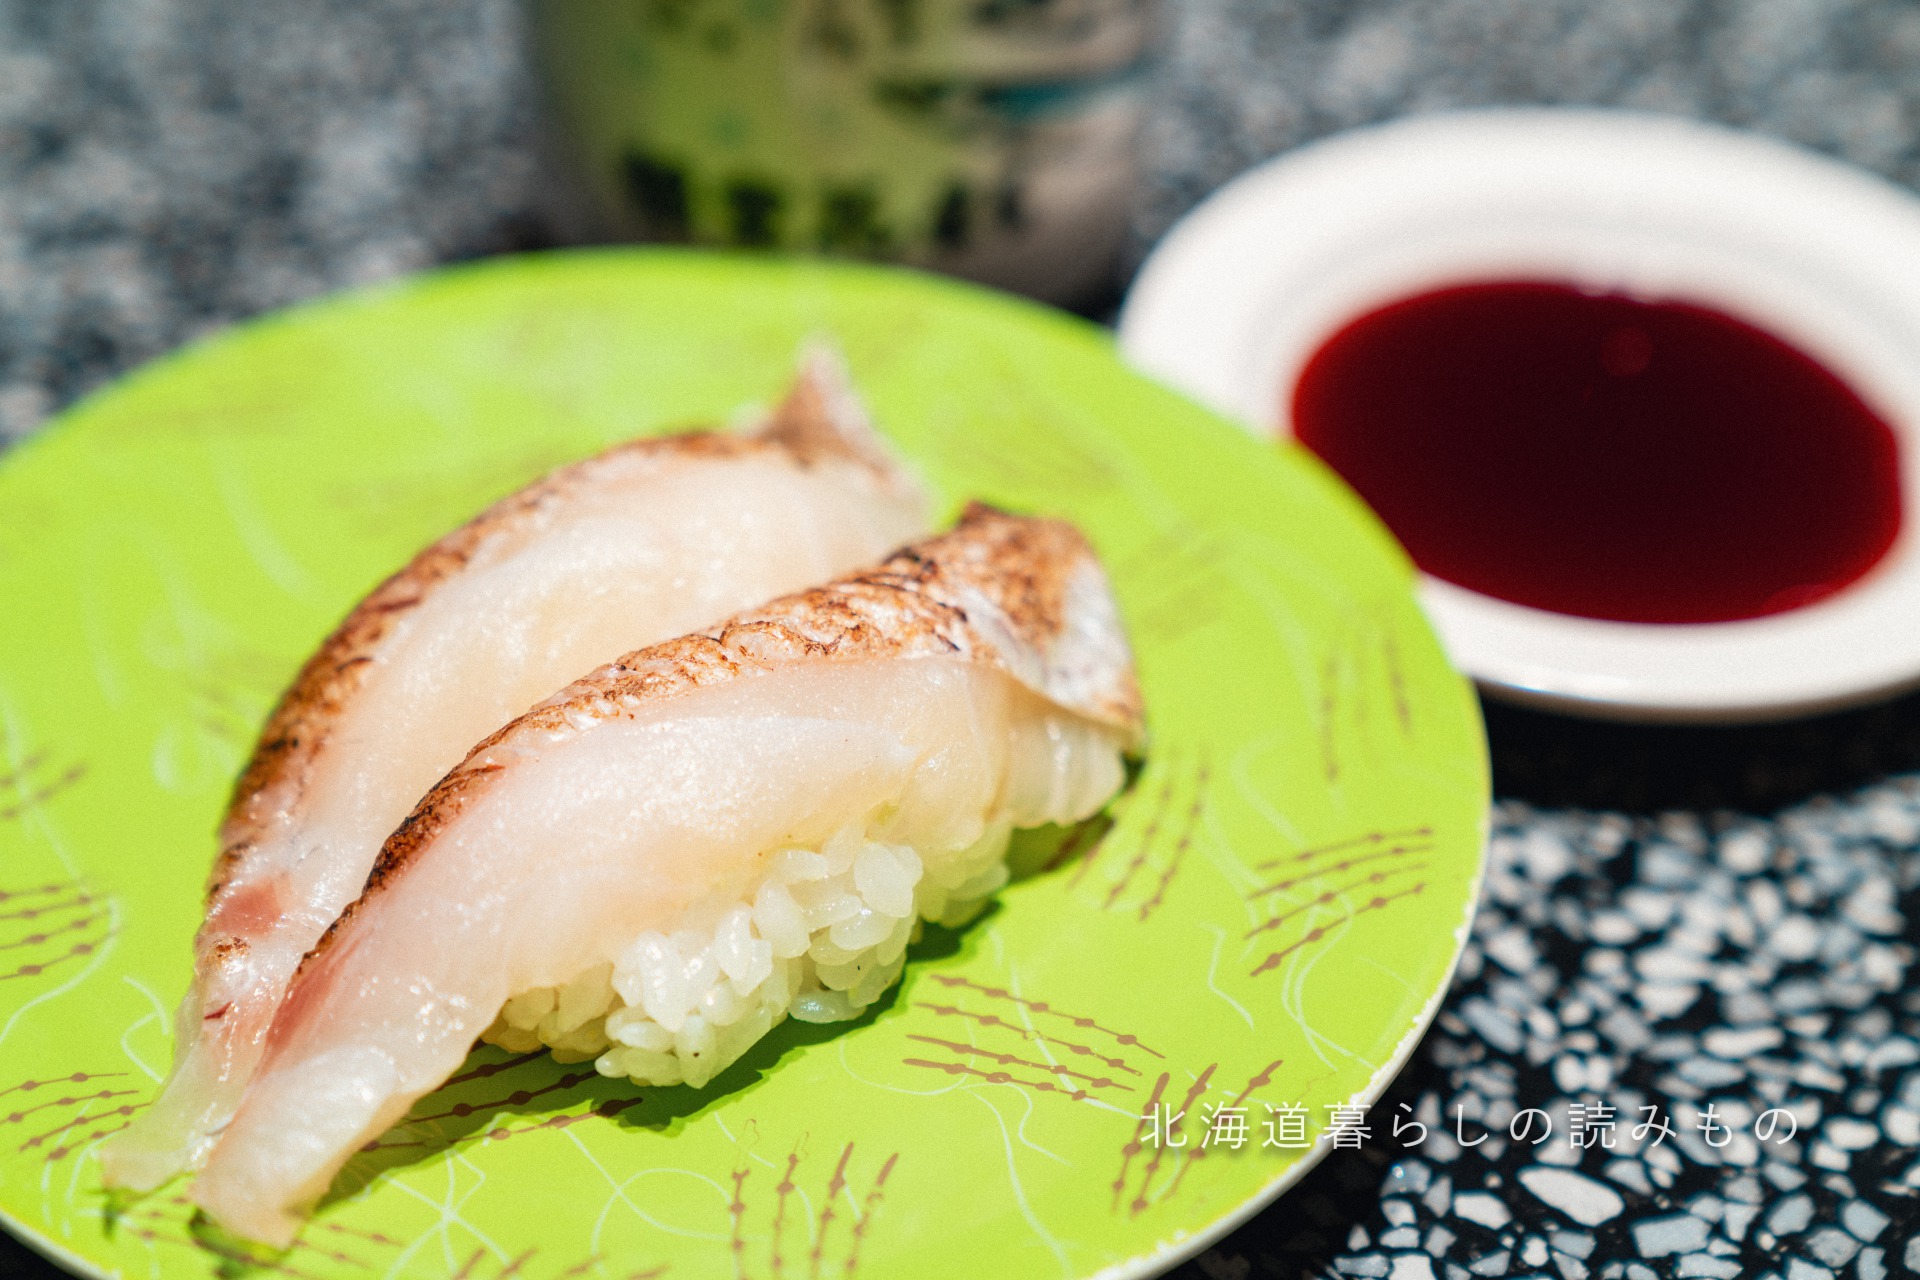 迴轉壽司根室花丸的菜單上的「鯛魚昆布漬」